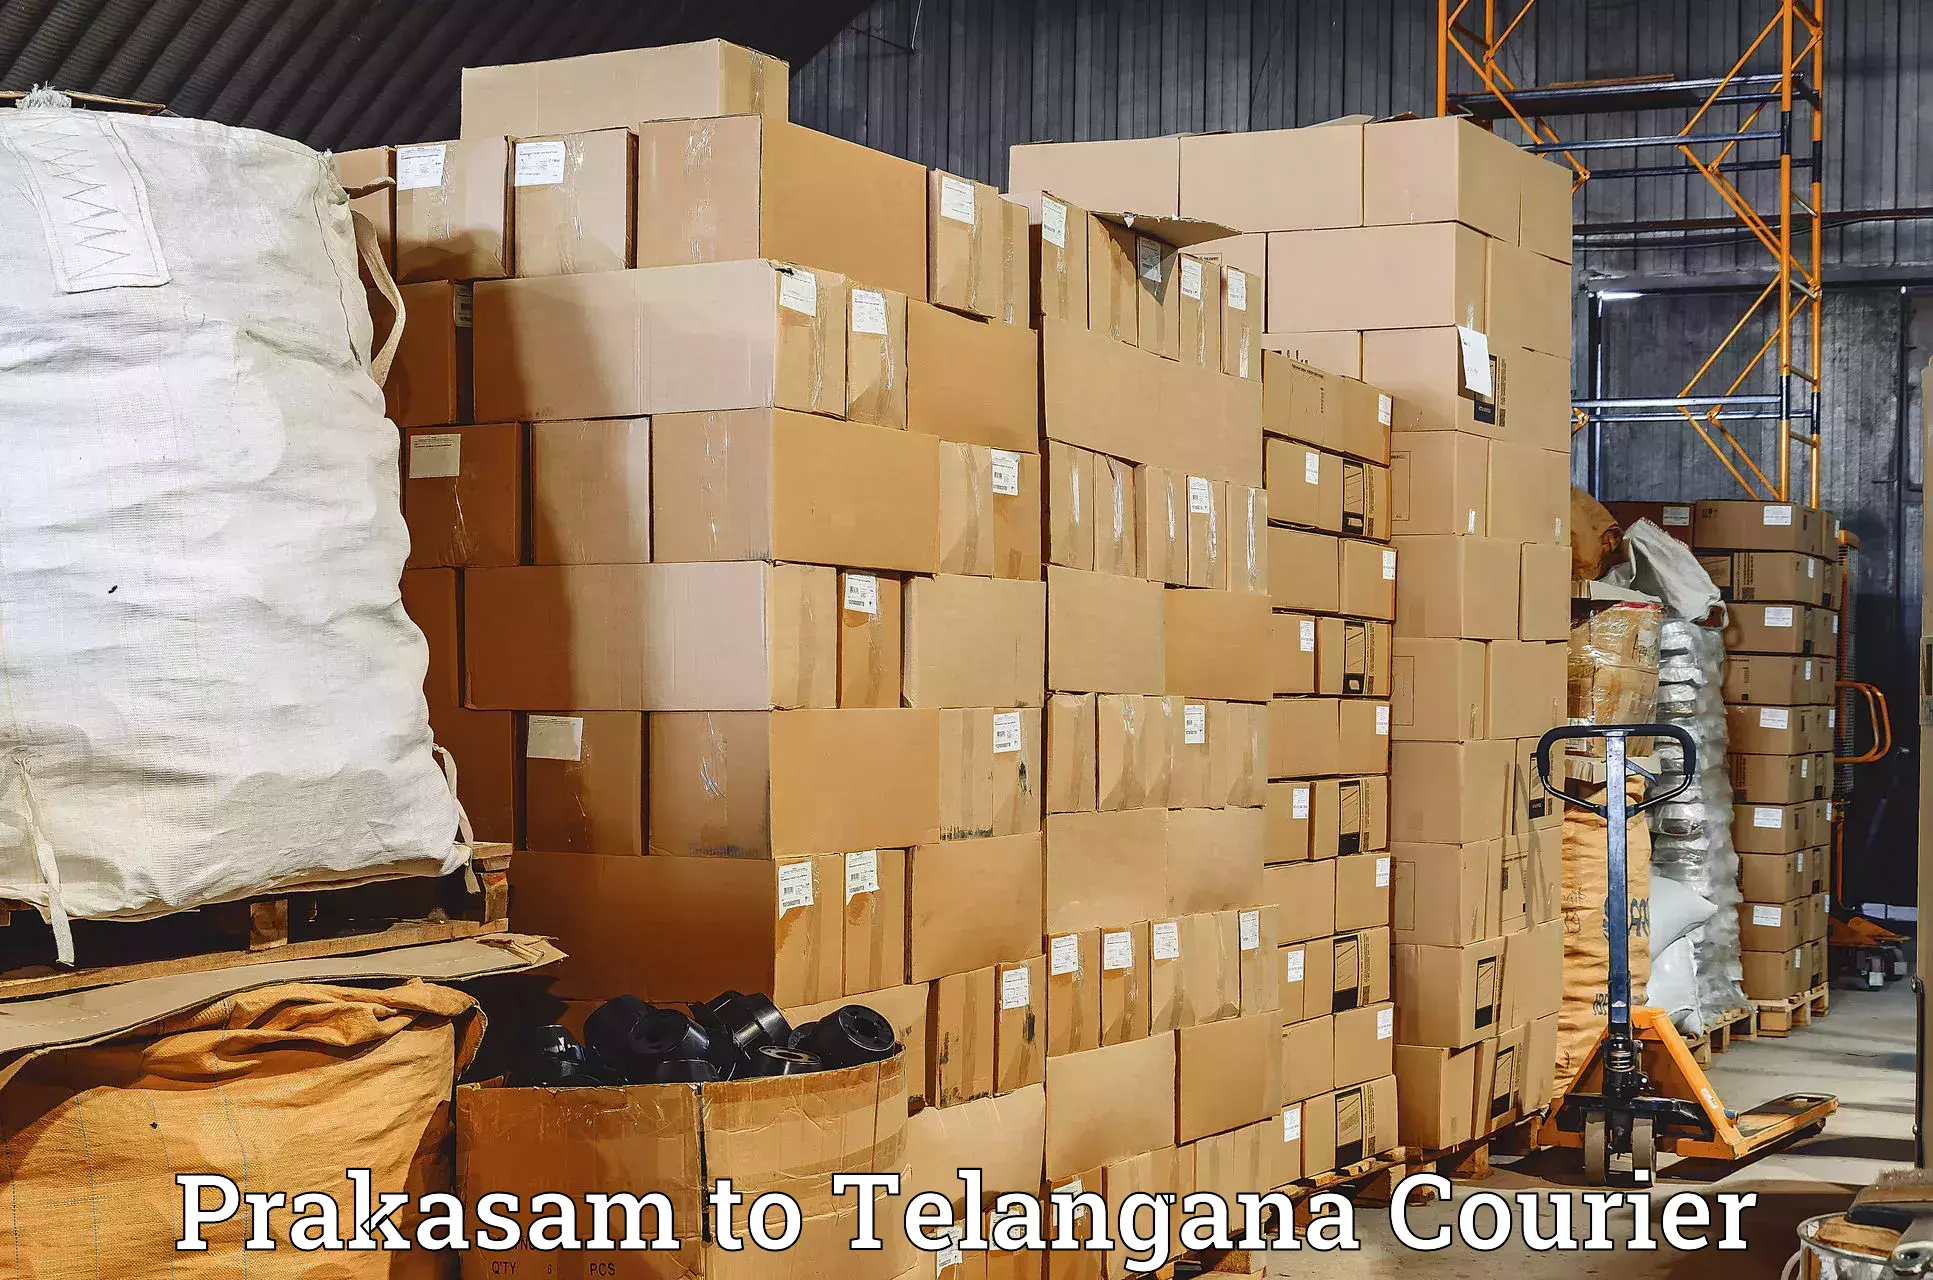 Door-to-door freight service Prakasam to Vikarabad